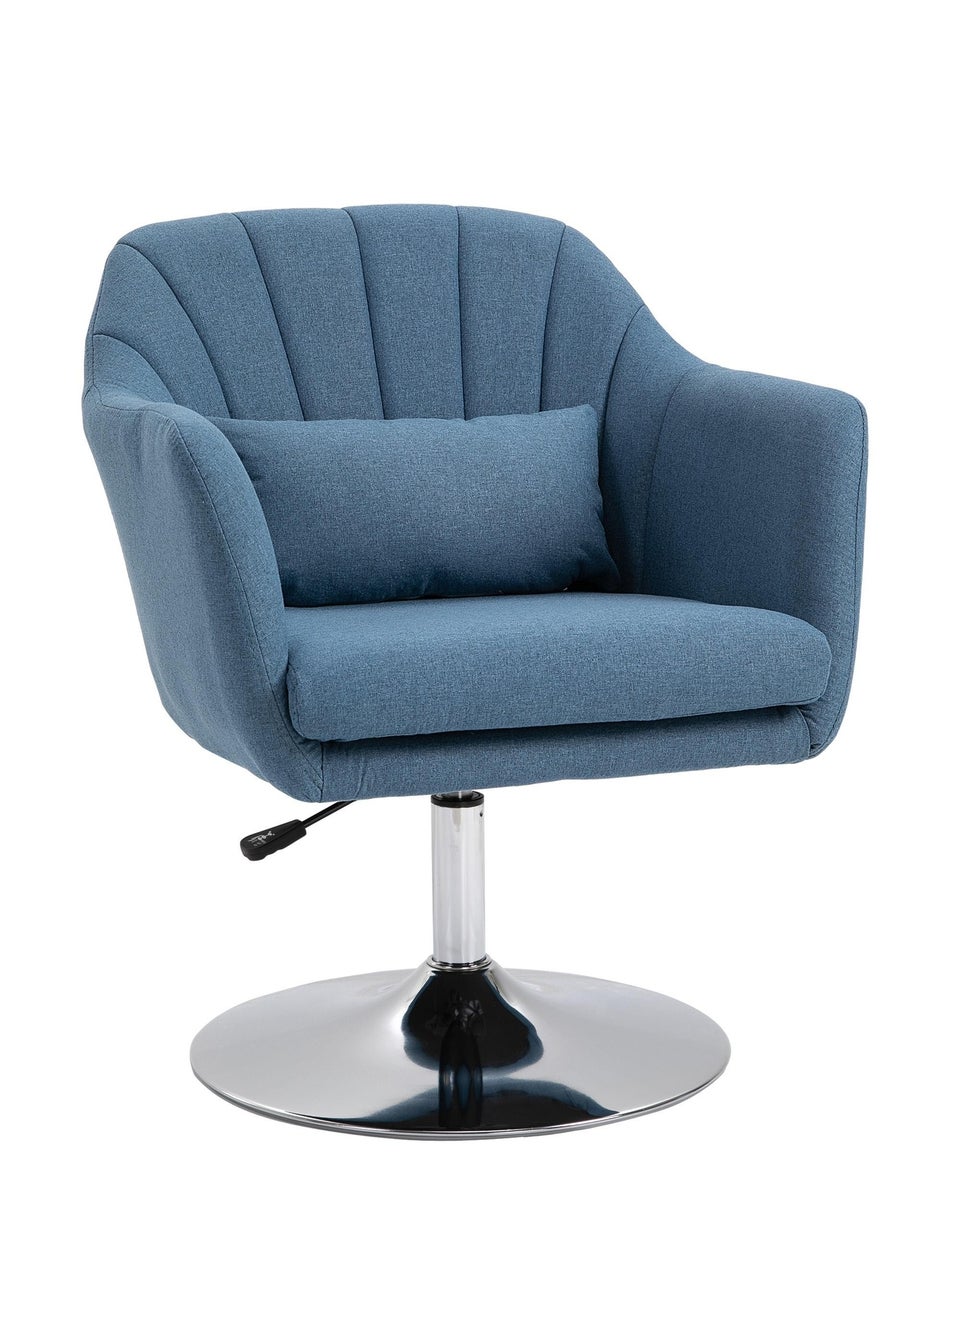 HOMCOM Blue Stylish Retro Linen Swivel Tub Chair (60cm x 60cm x 91cm)